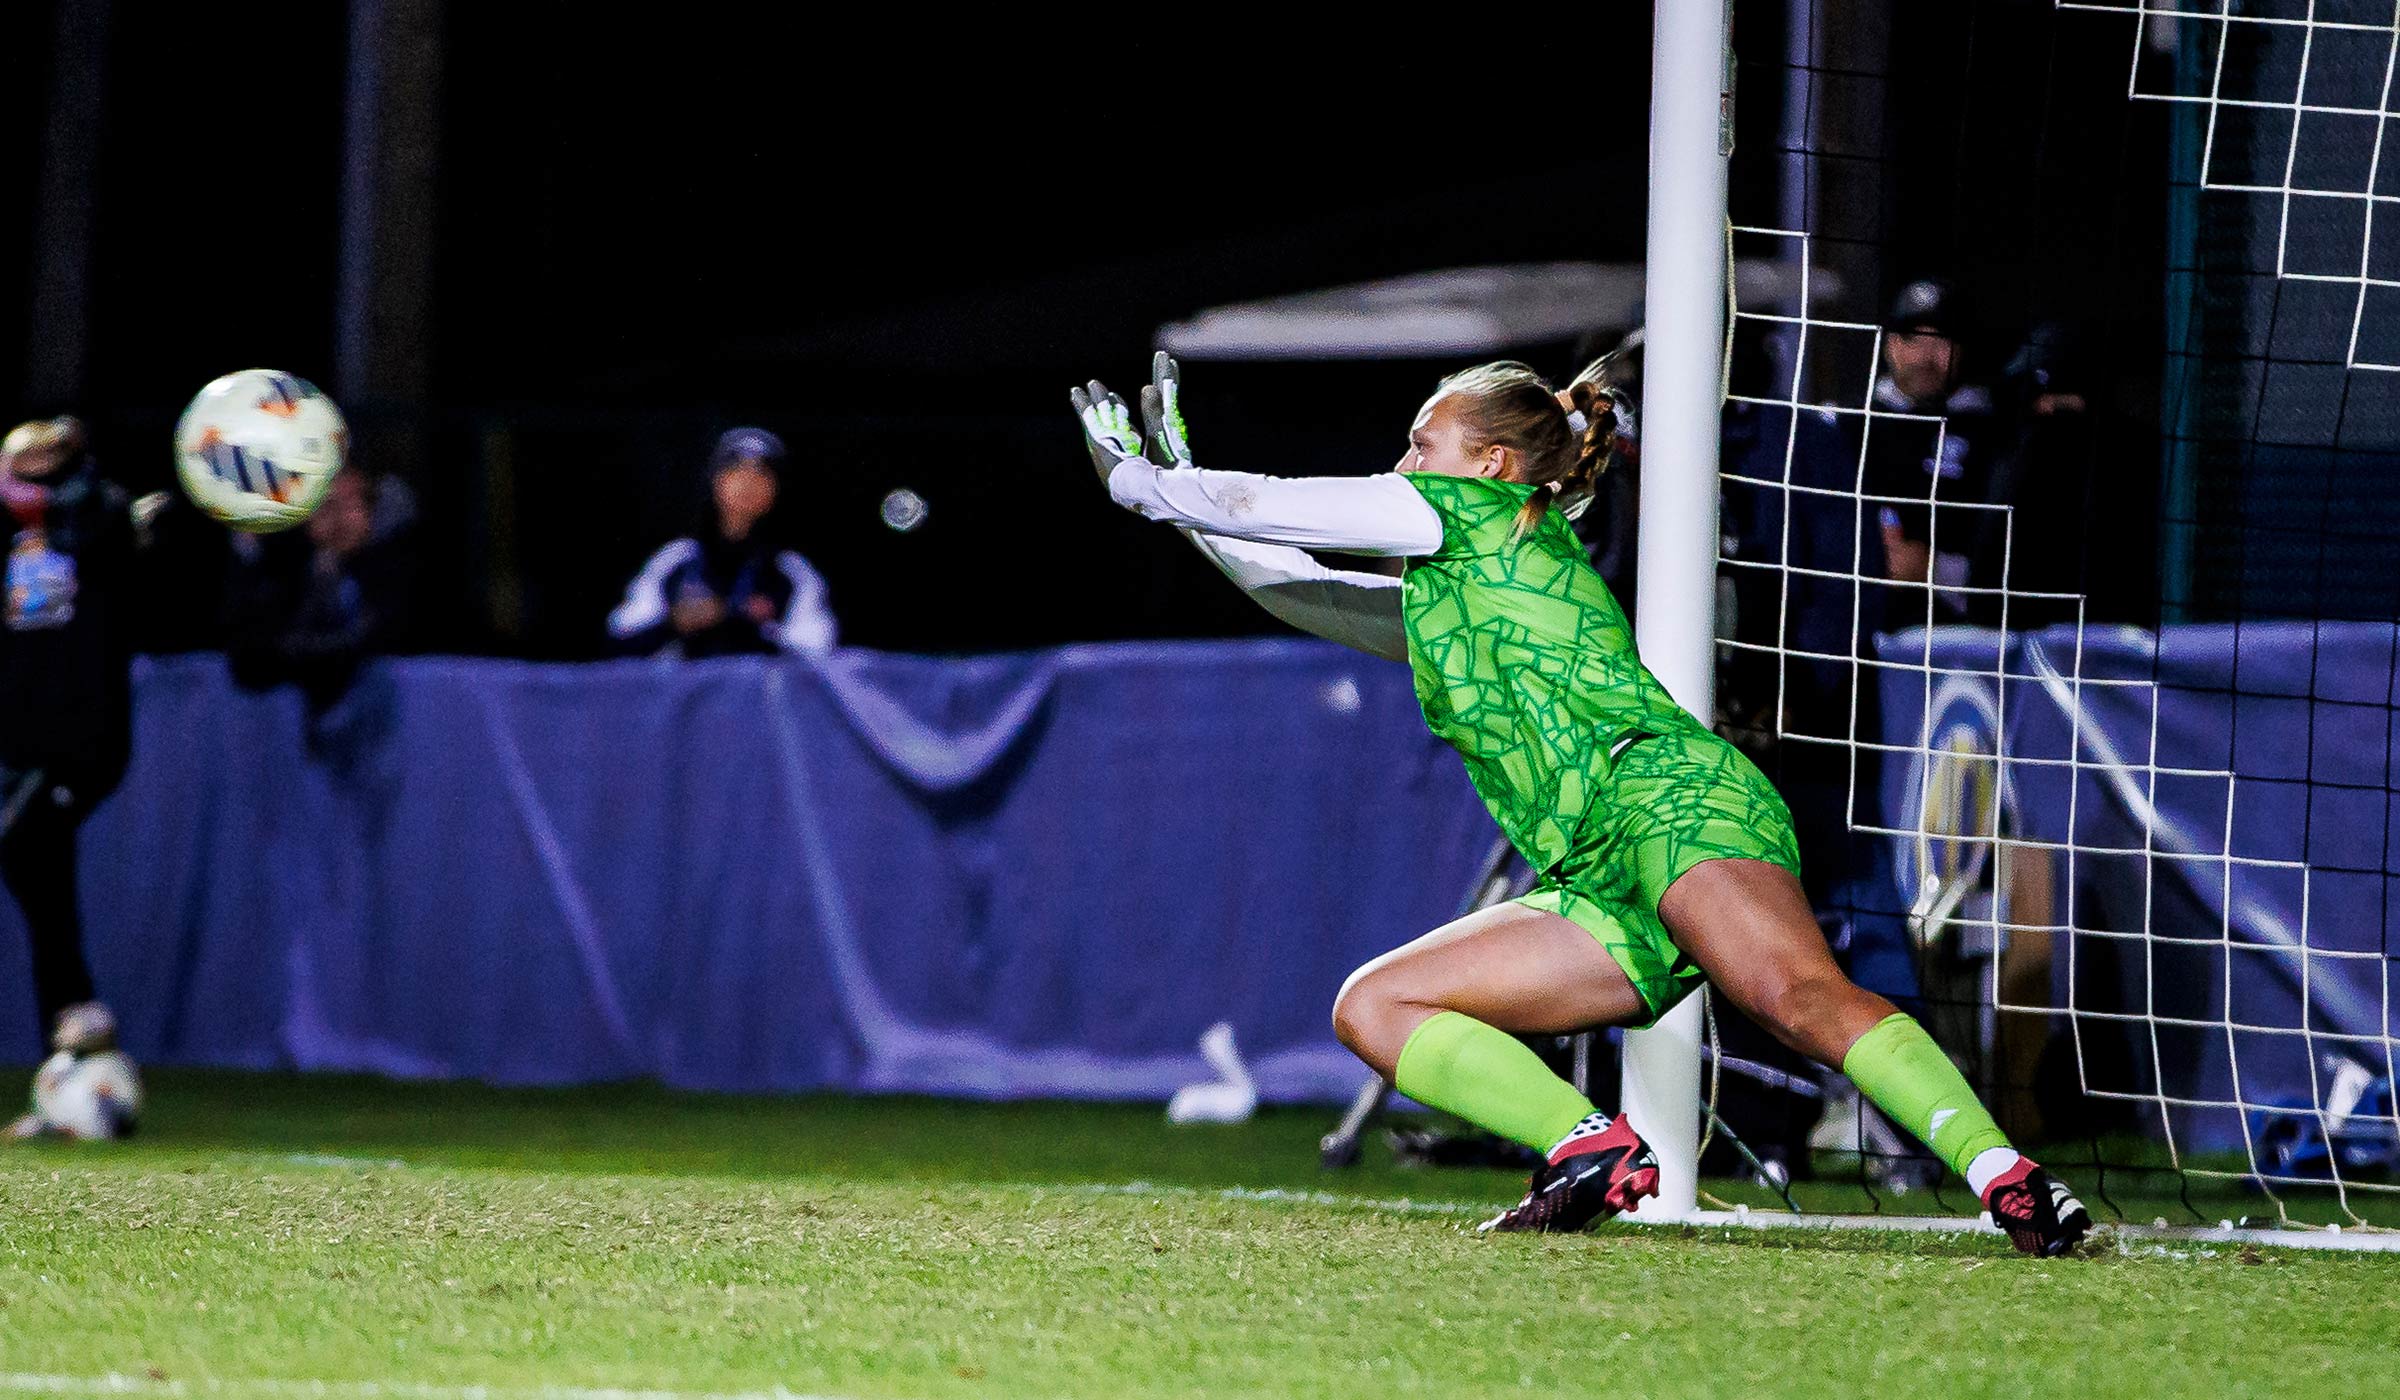 Female goalkeeper in green soccer kit diving towards soccer ball